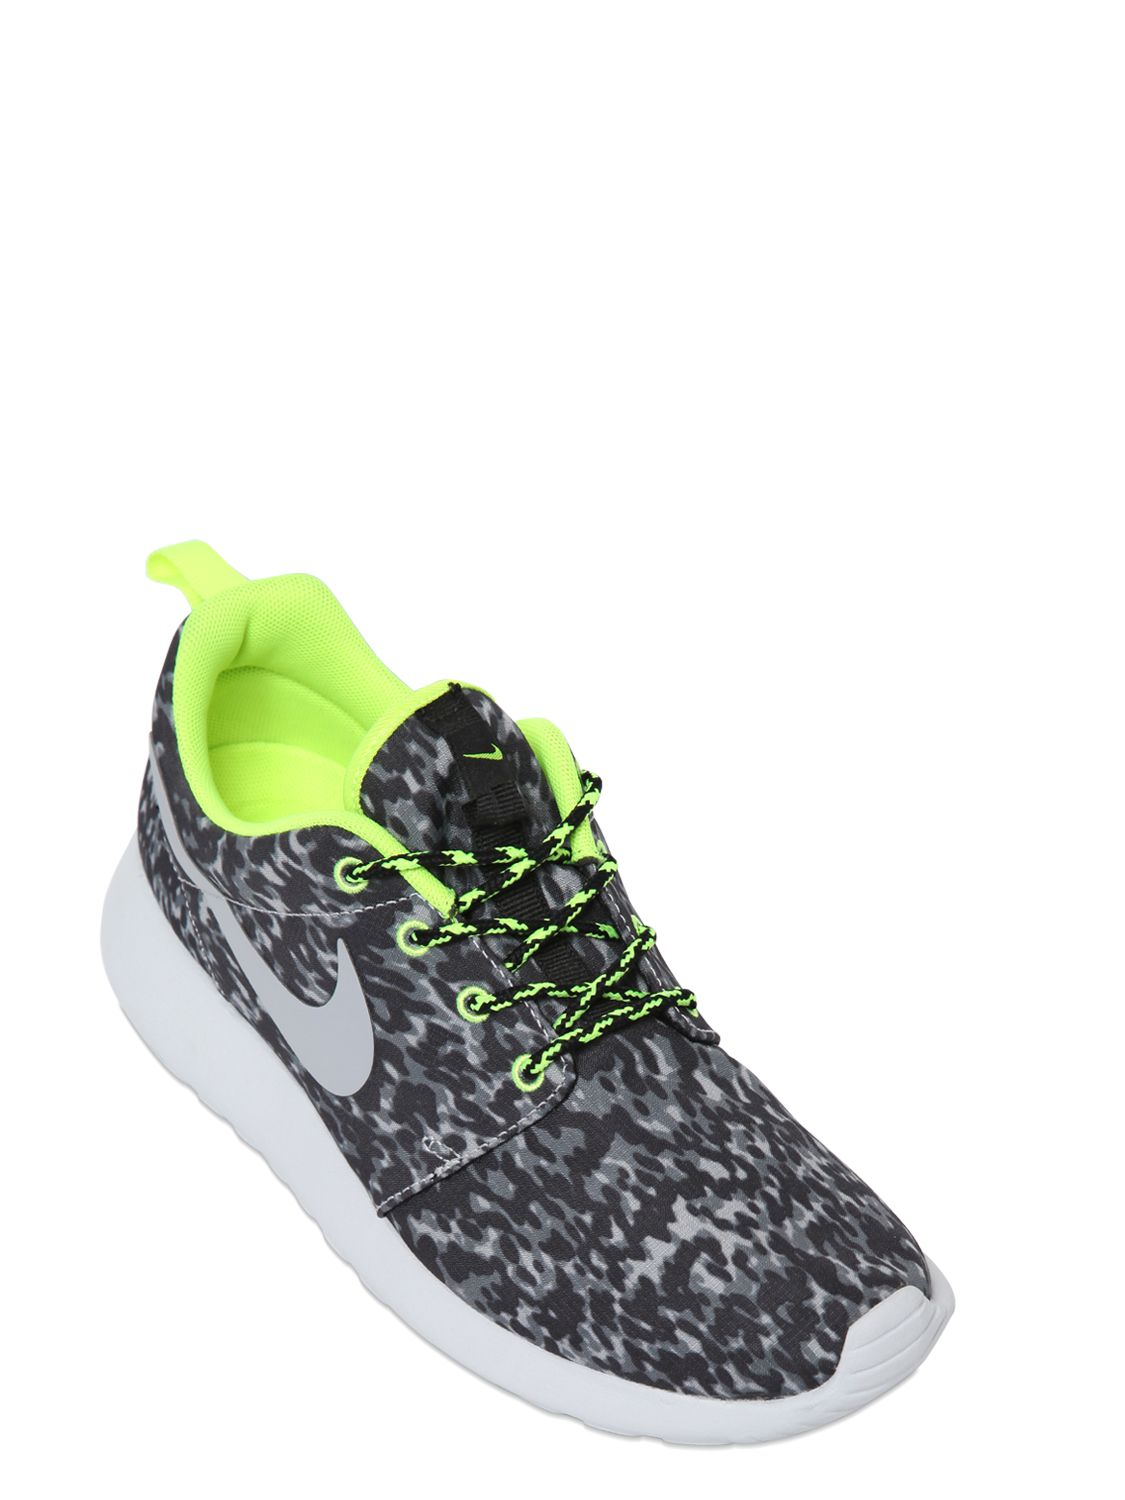 Maquinilla de afeitar Ostentoso Estadísticas Nike Roshe Run Leopard Print Running Sneakers in Gray | Lyst